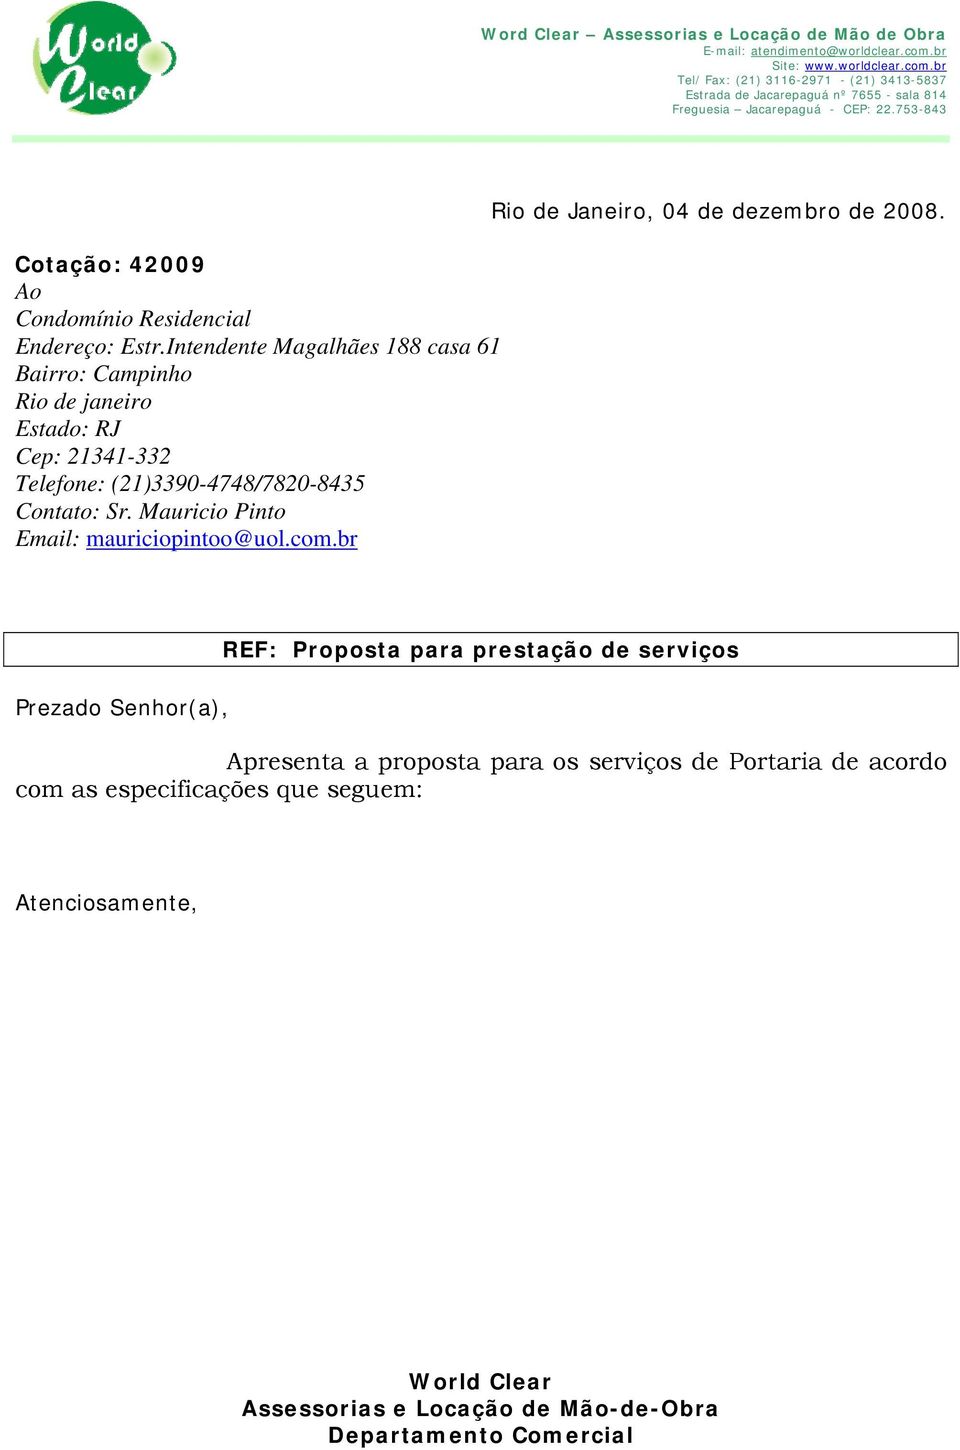 Contato: Sr. Mauricio Pinto Email: mauriciopintoo@uol.com.br Rio de Janeiro, 04 de dezembro de 2008.